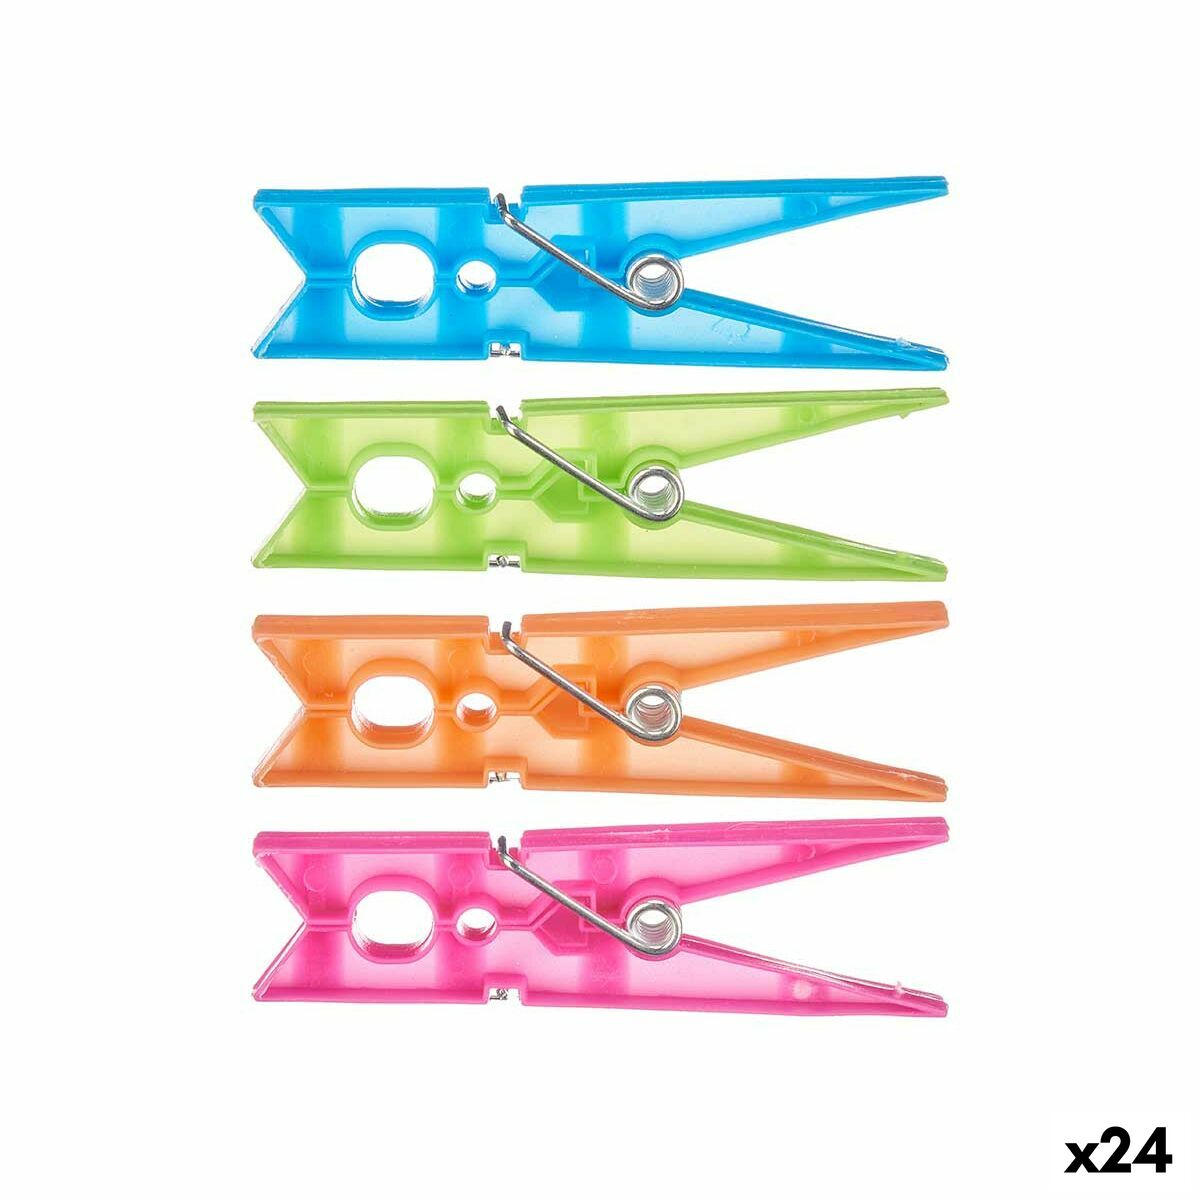 Mollette per Panni Multicolore Plastica 24 Pezzi Set (24 Unità)